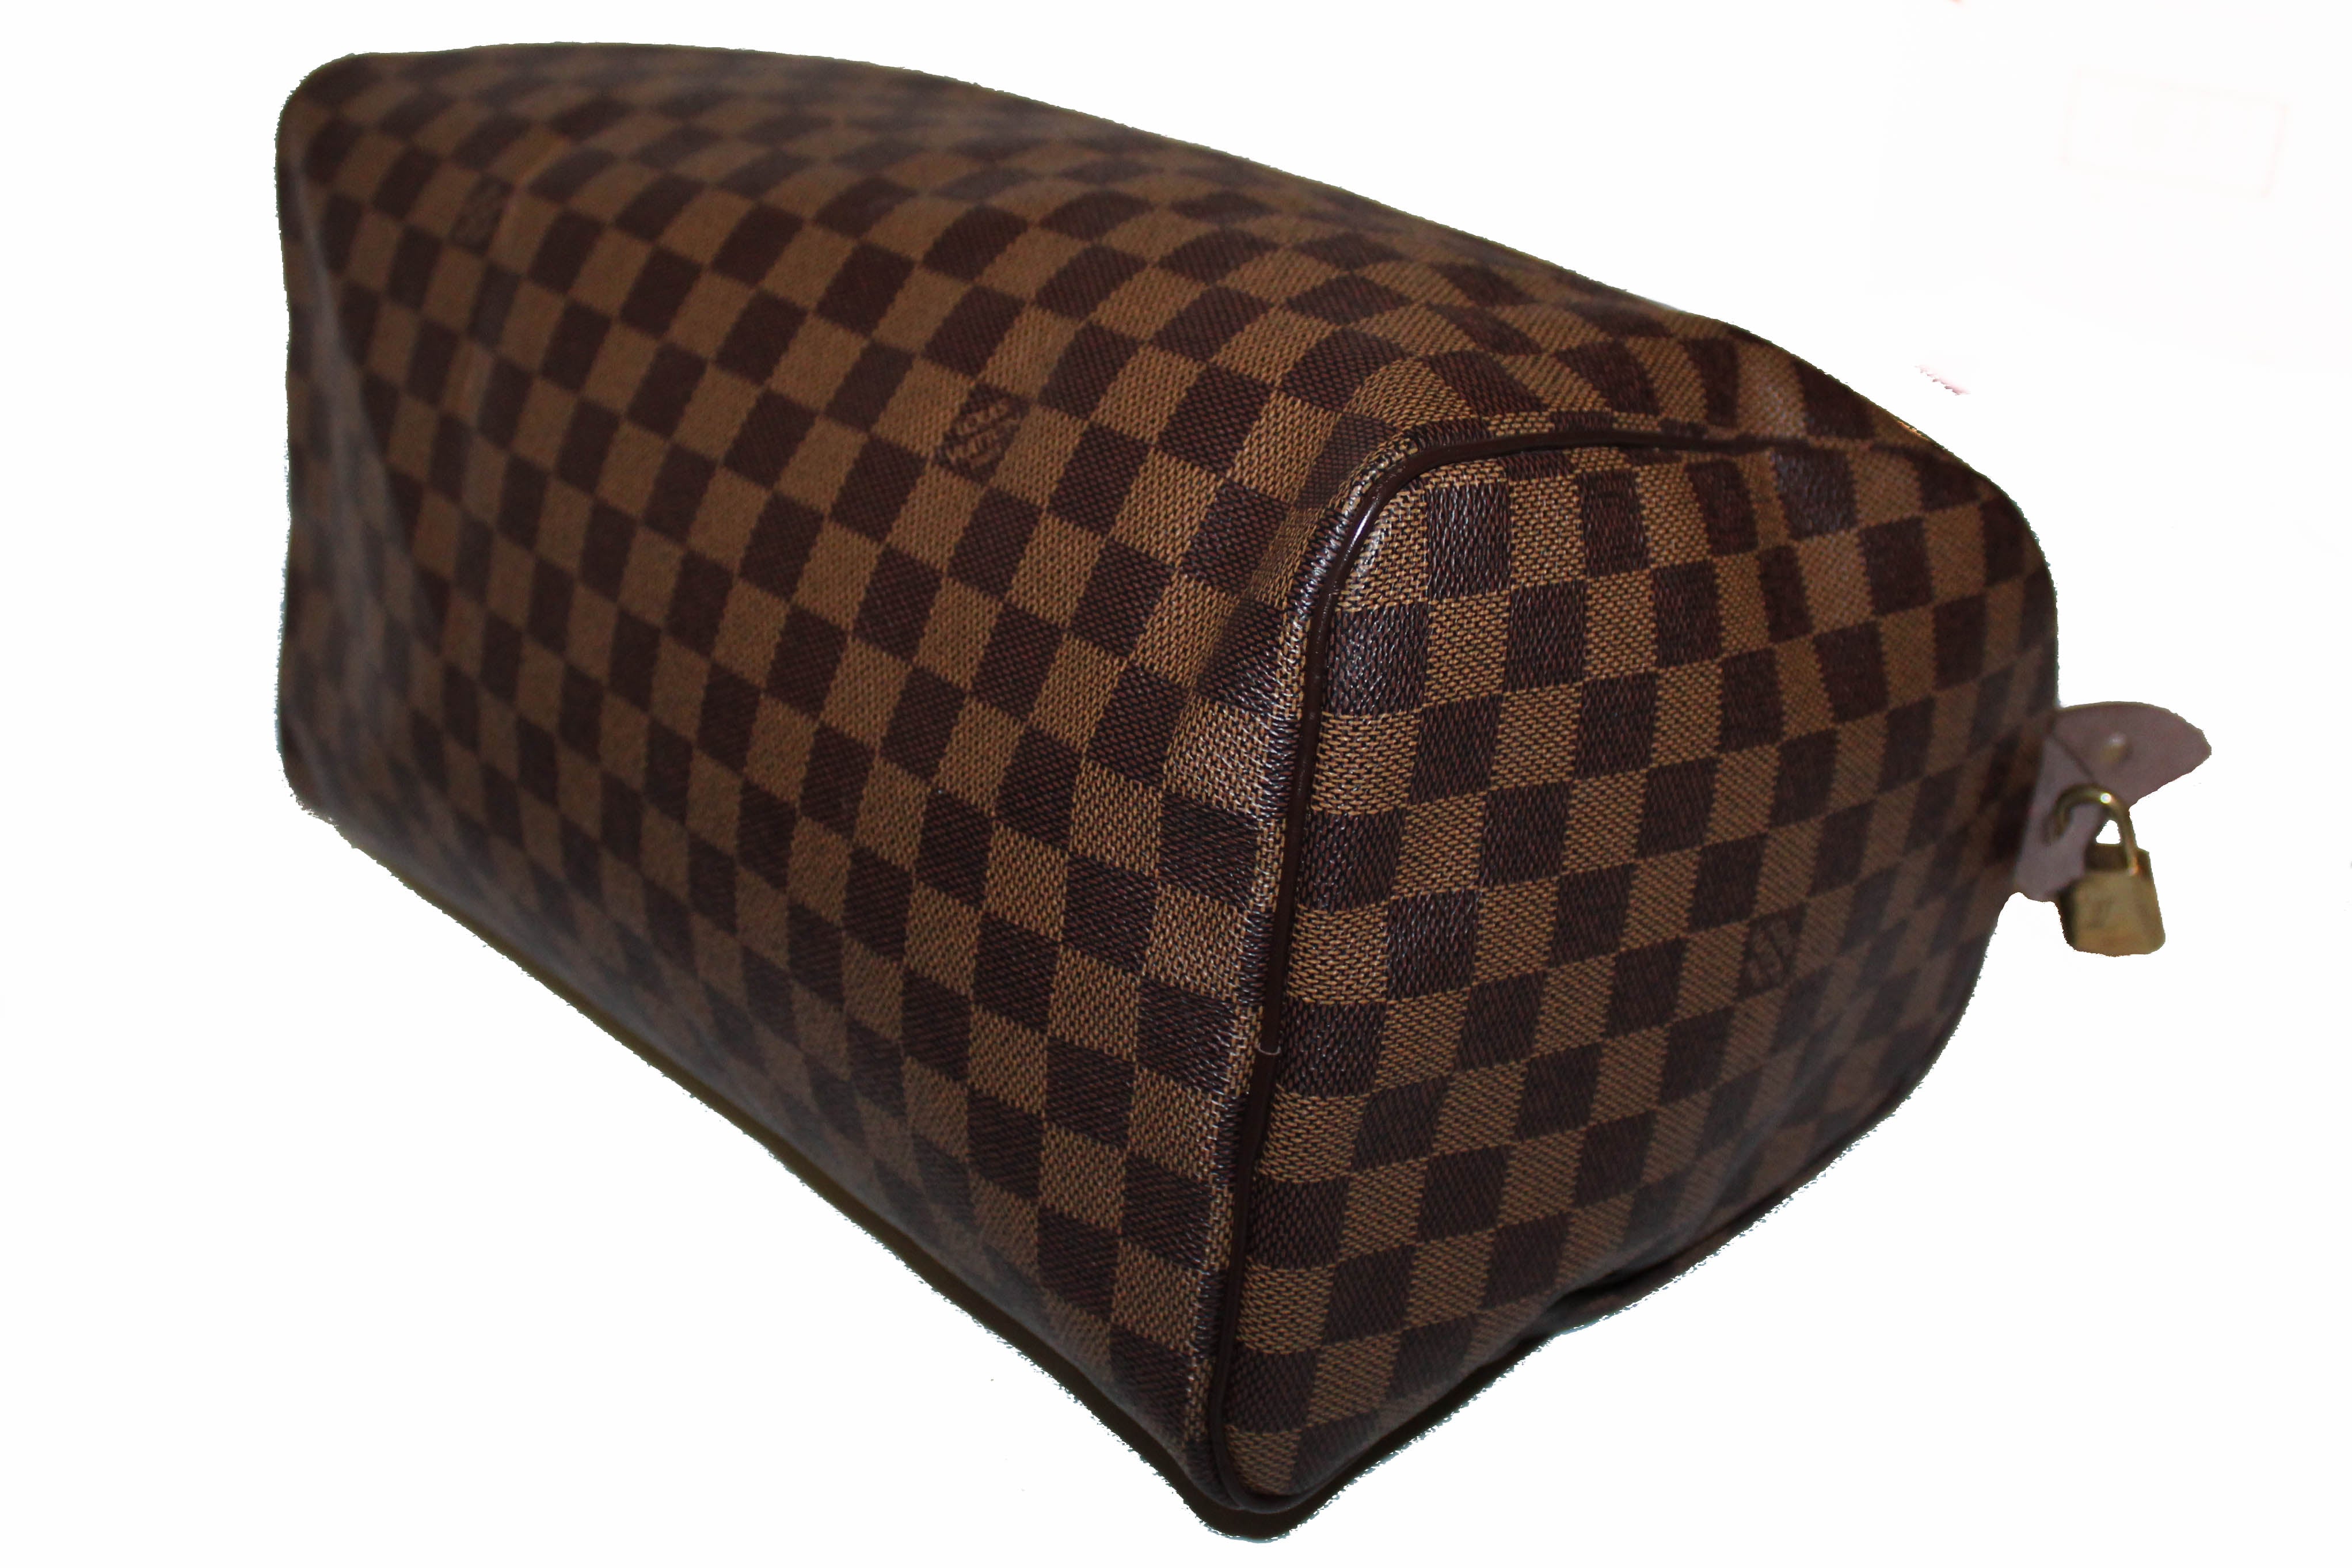 Authentic Louis Vuitton Damier Ebene Speedy 35 Handbag – Paris Station Shop